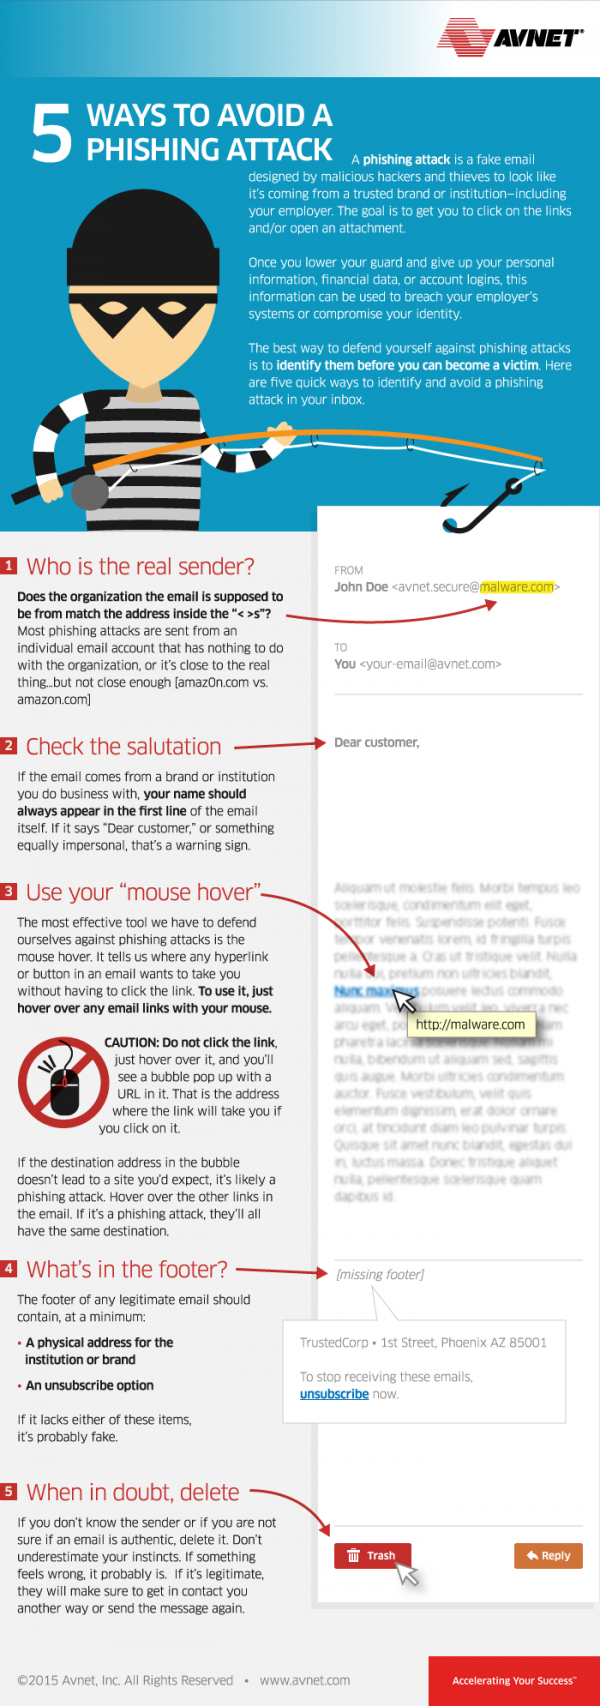 five ways to avoid phishing attacks infographic